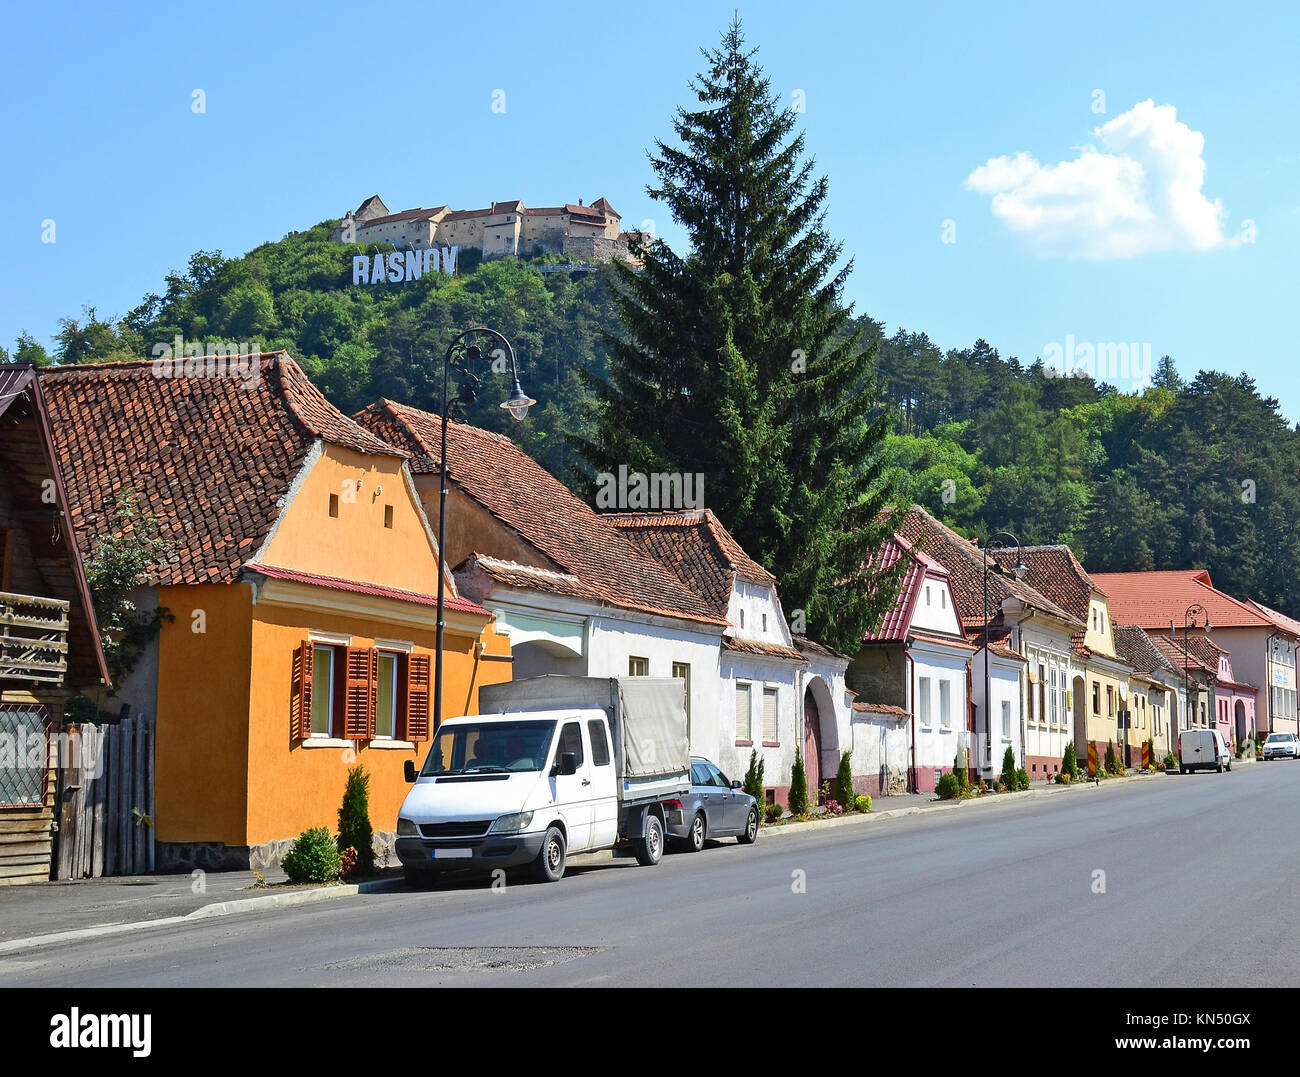 Street in Rasnov city, Romania Stock Photo